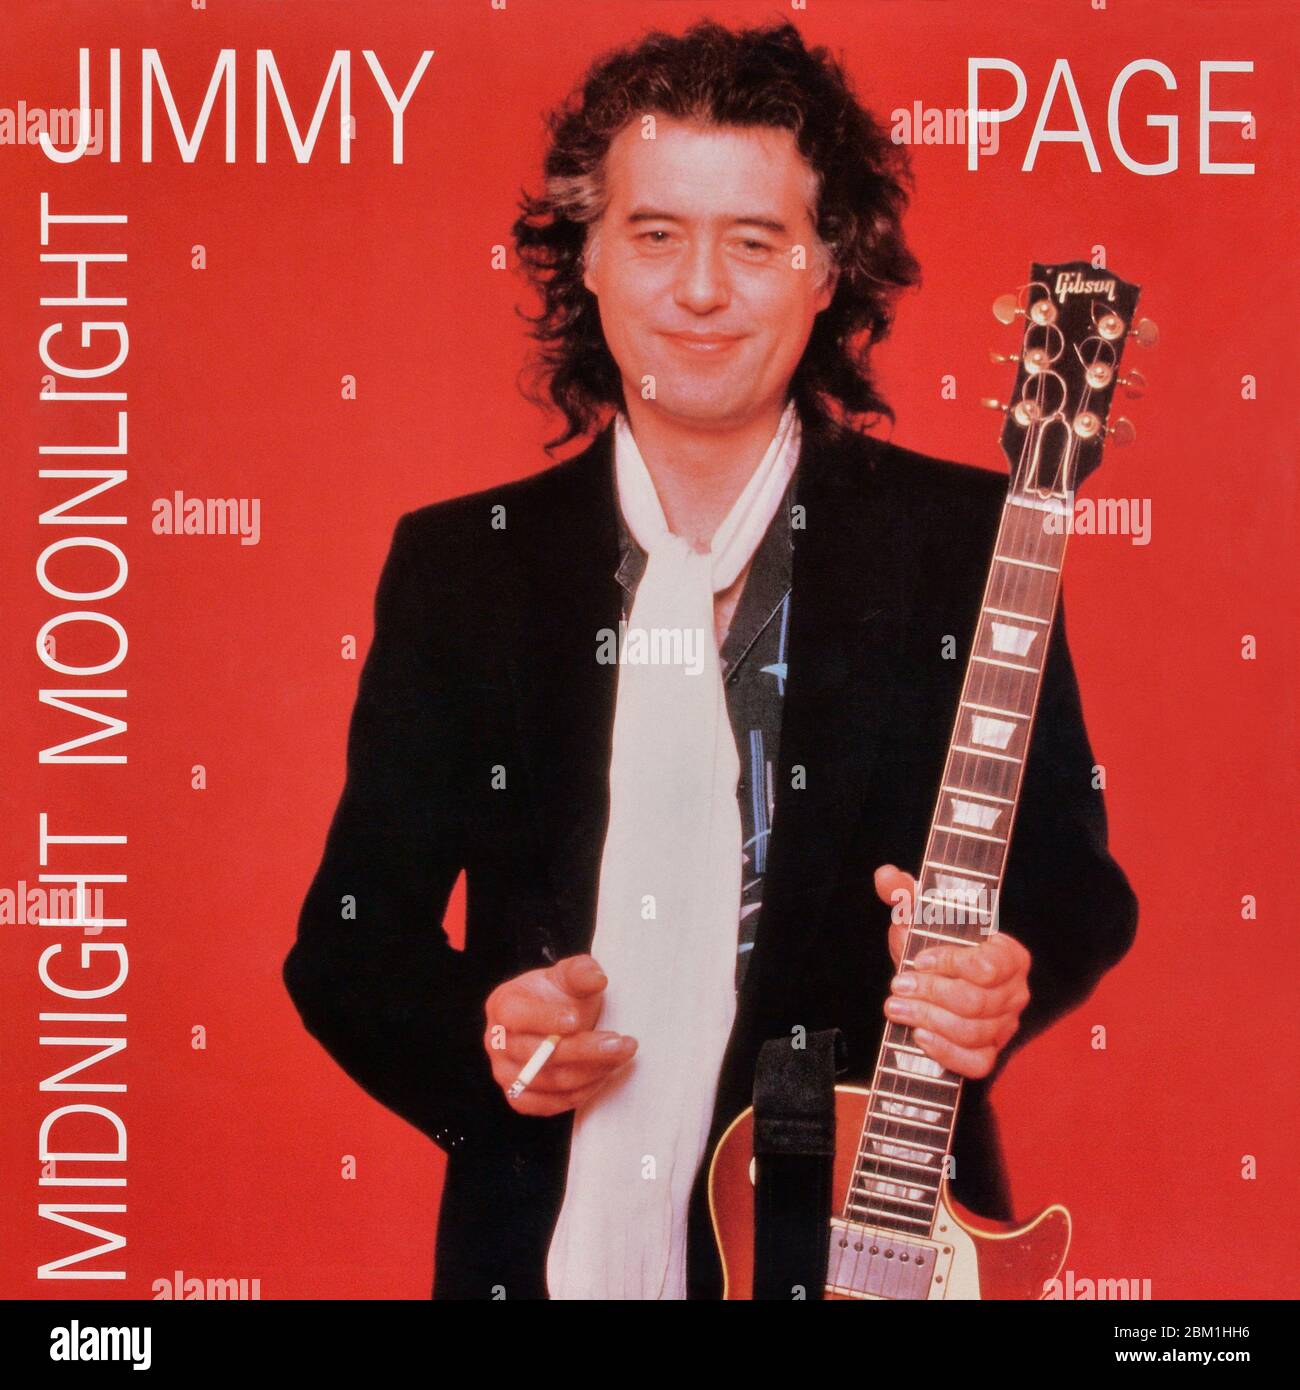 Jimmy Page - original Vinyl Album Cover - Midnight Moonlight - 1992 Stockfoto